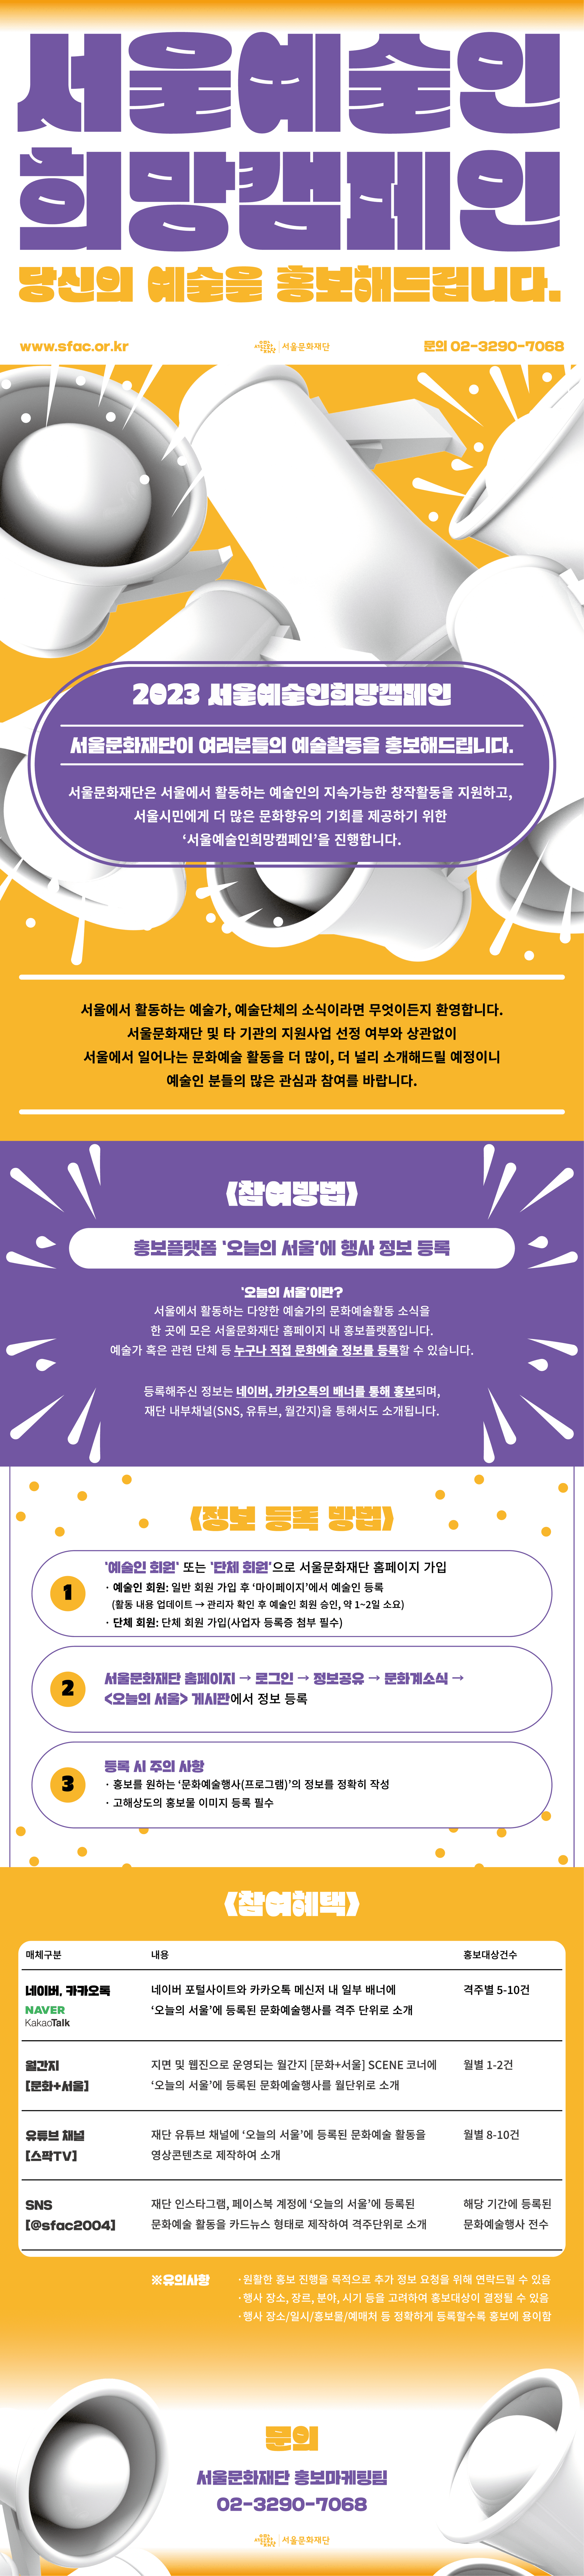 서울예술인희망캠페인